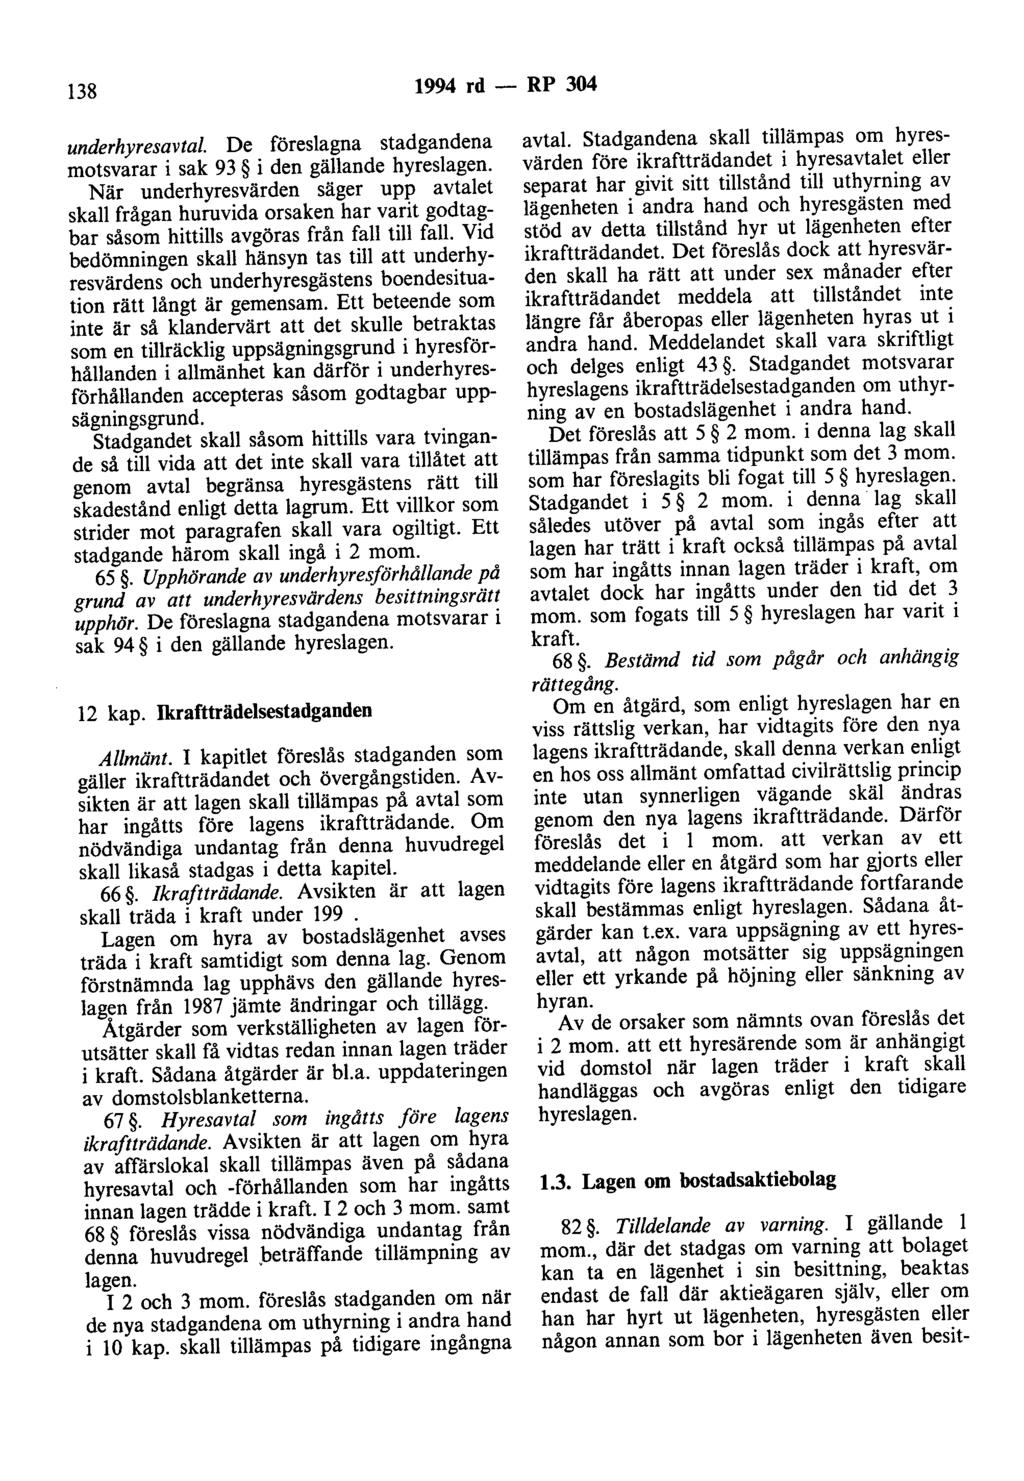 138 1994 rd - RP 304 underhyresavtal De föreslagna stadgandena motsvarar i sak 93 i den gällande hyreslagen.